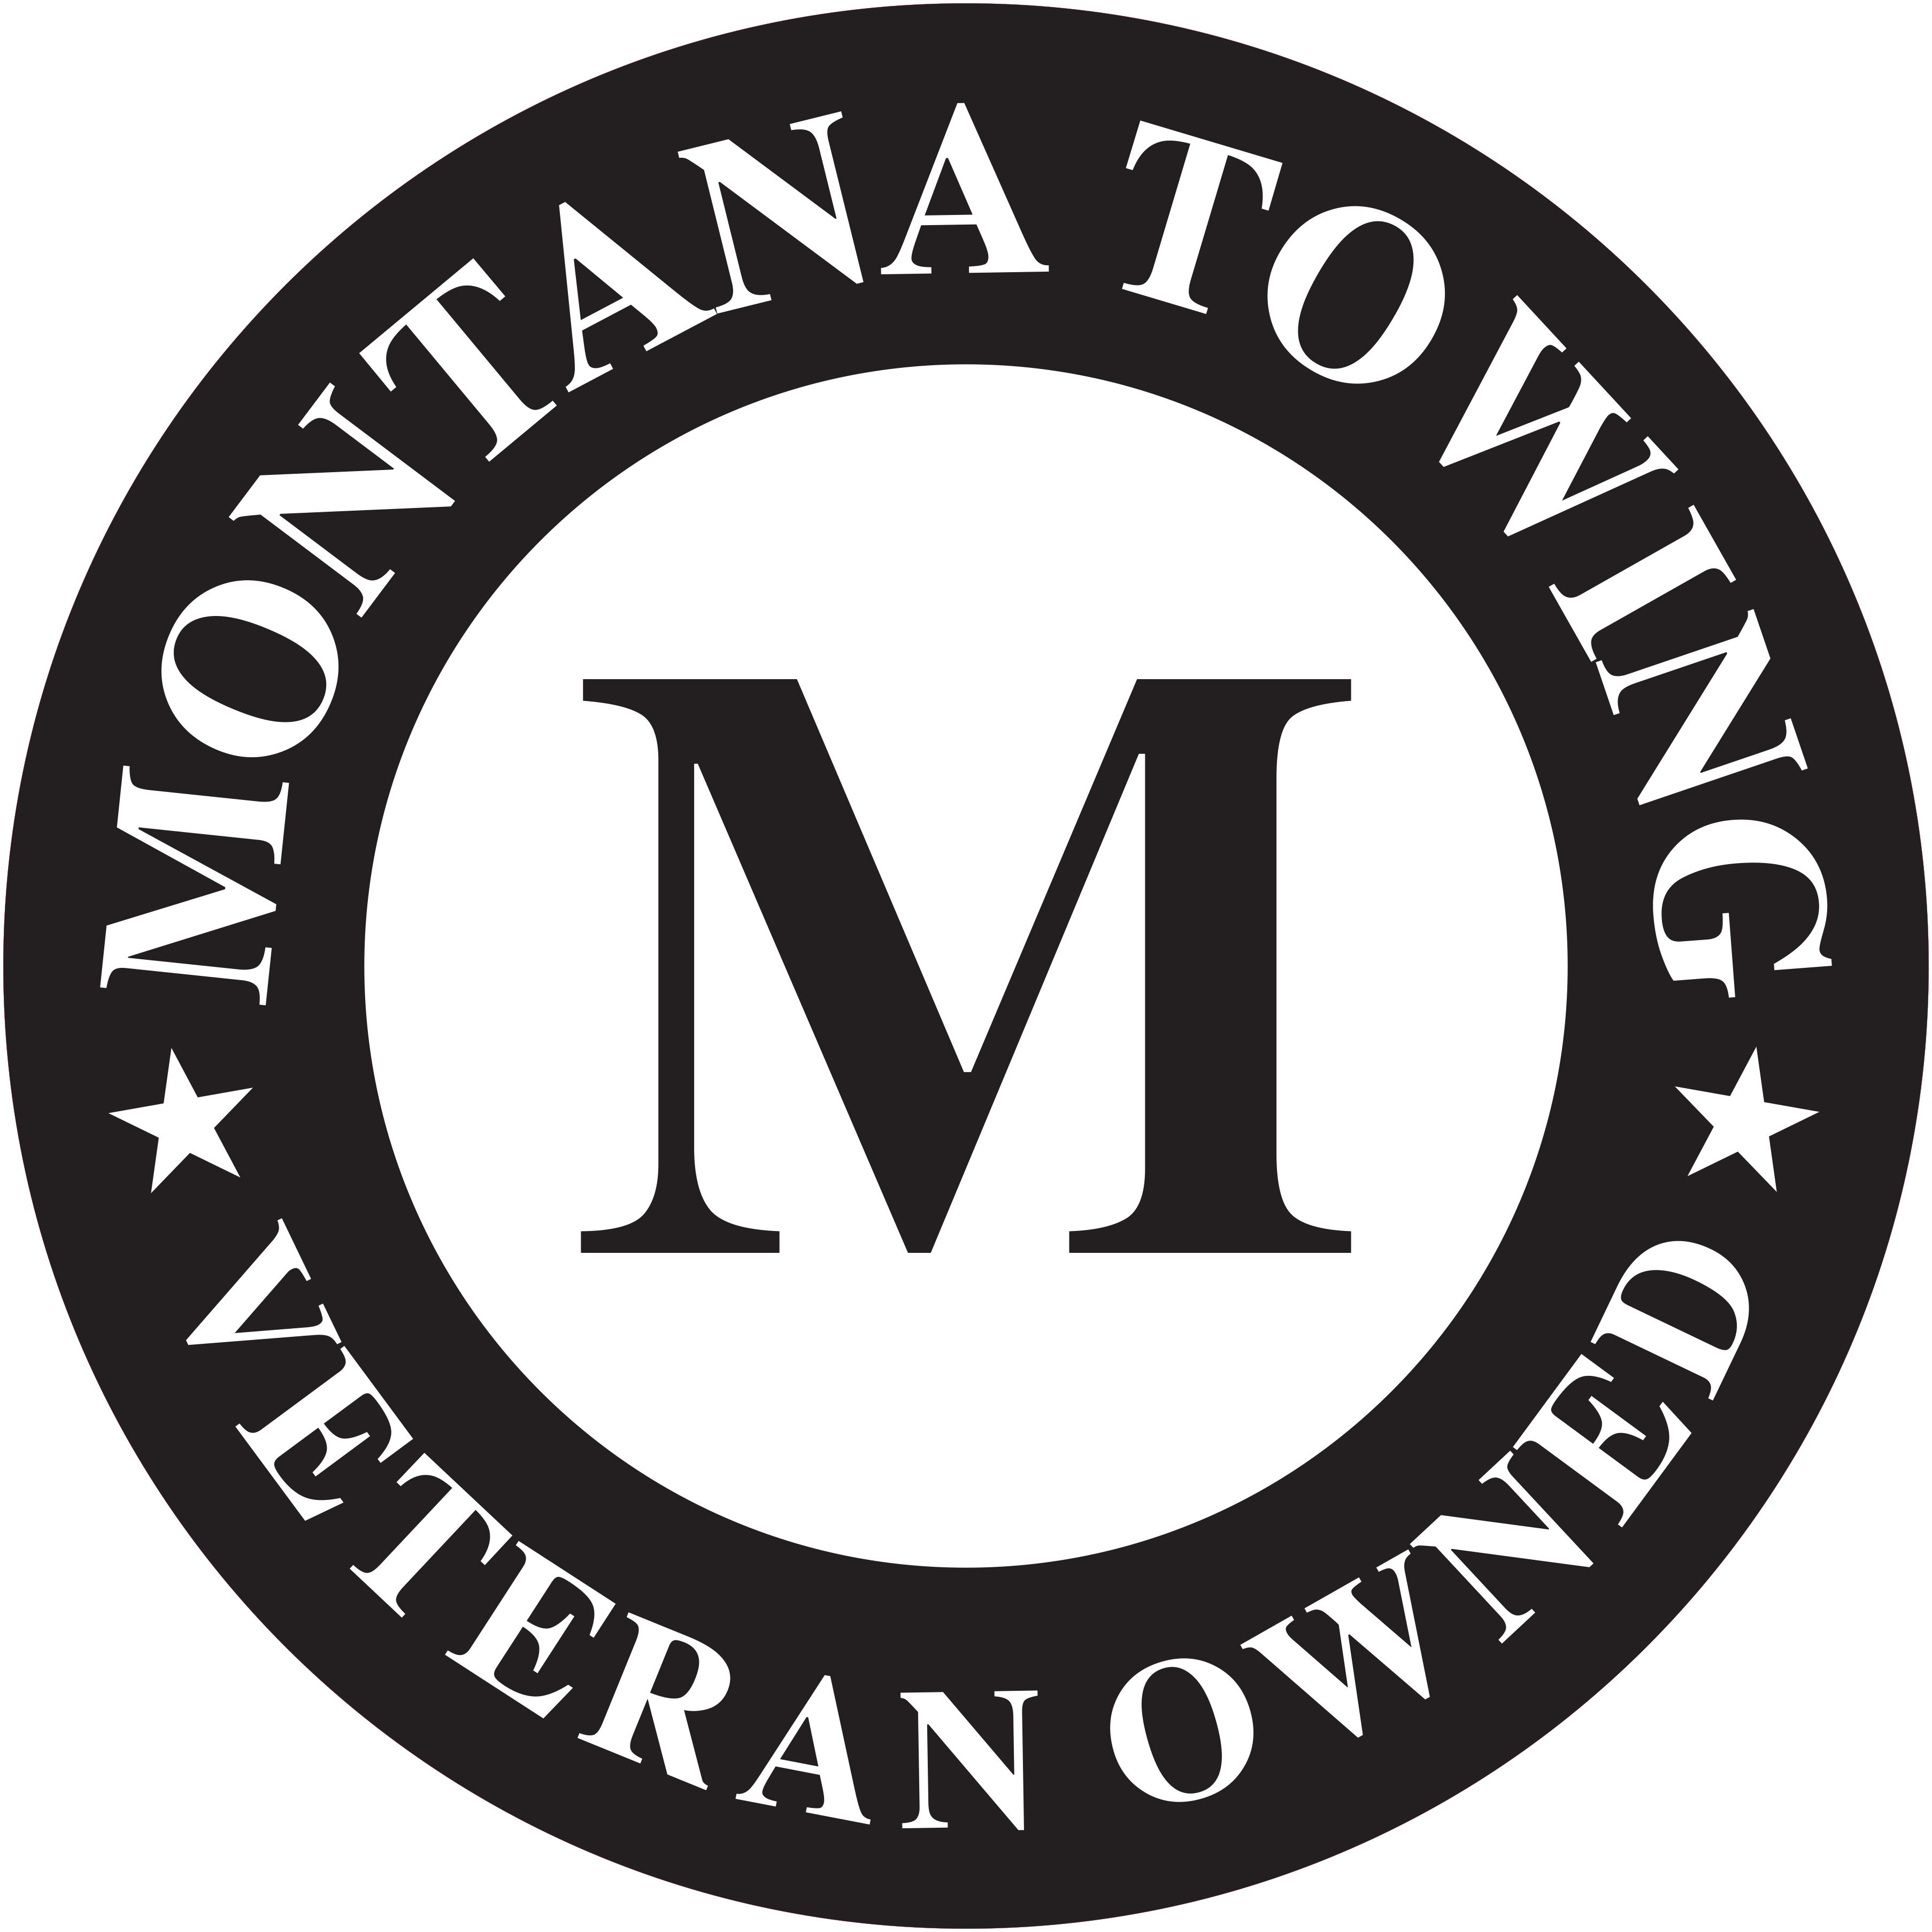 Montana Towing